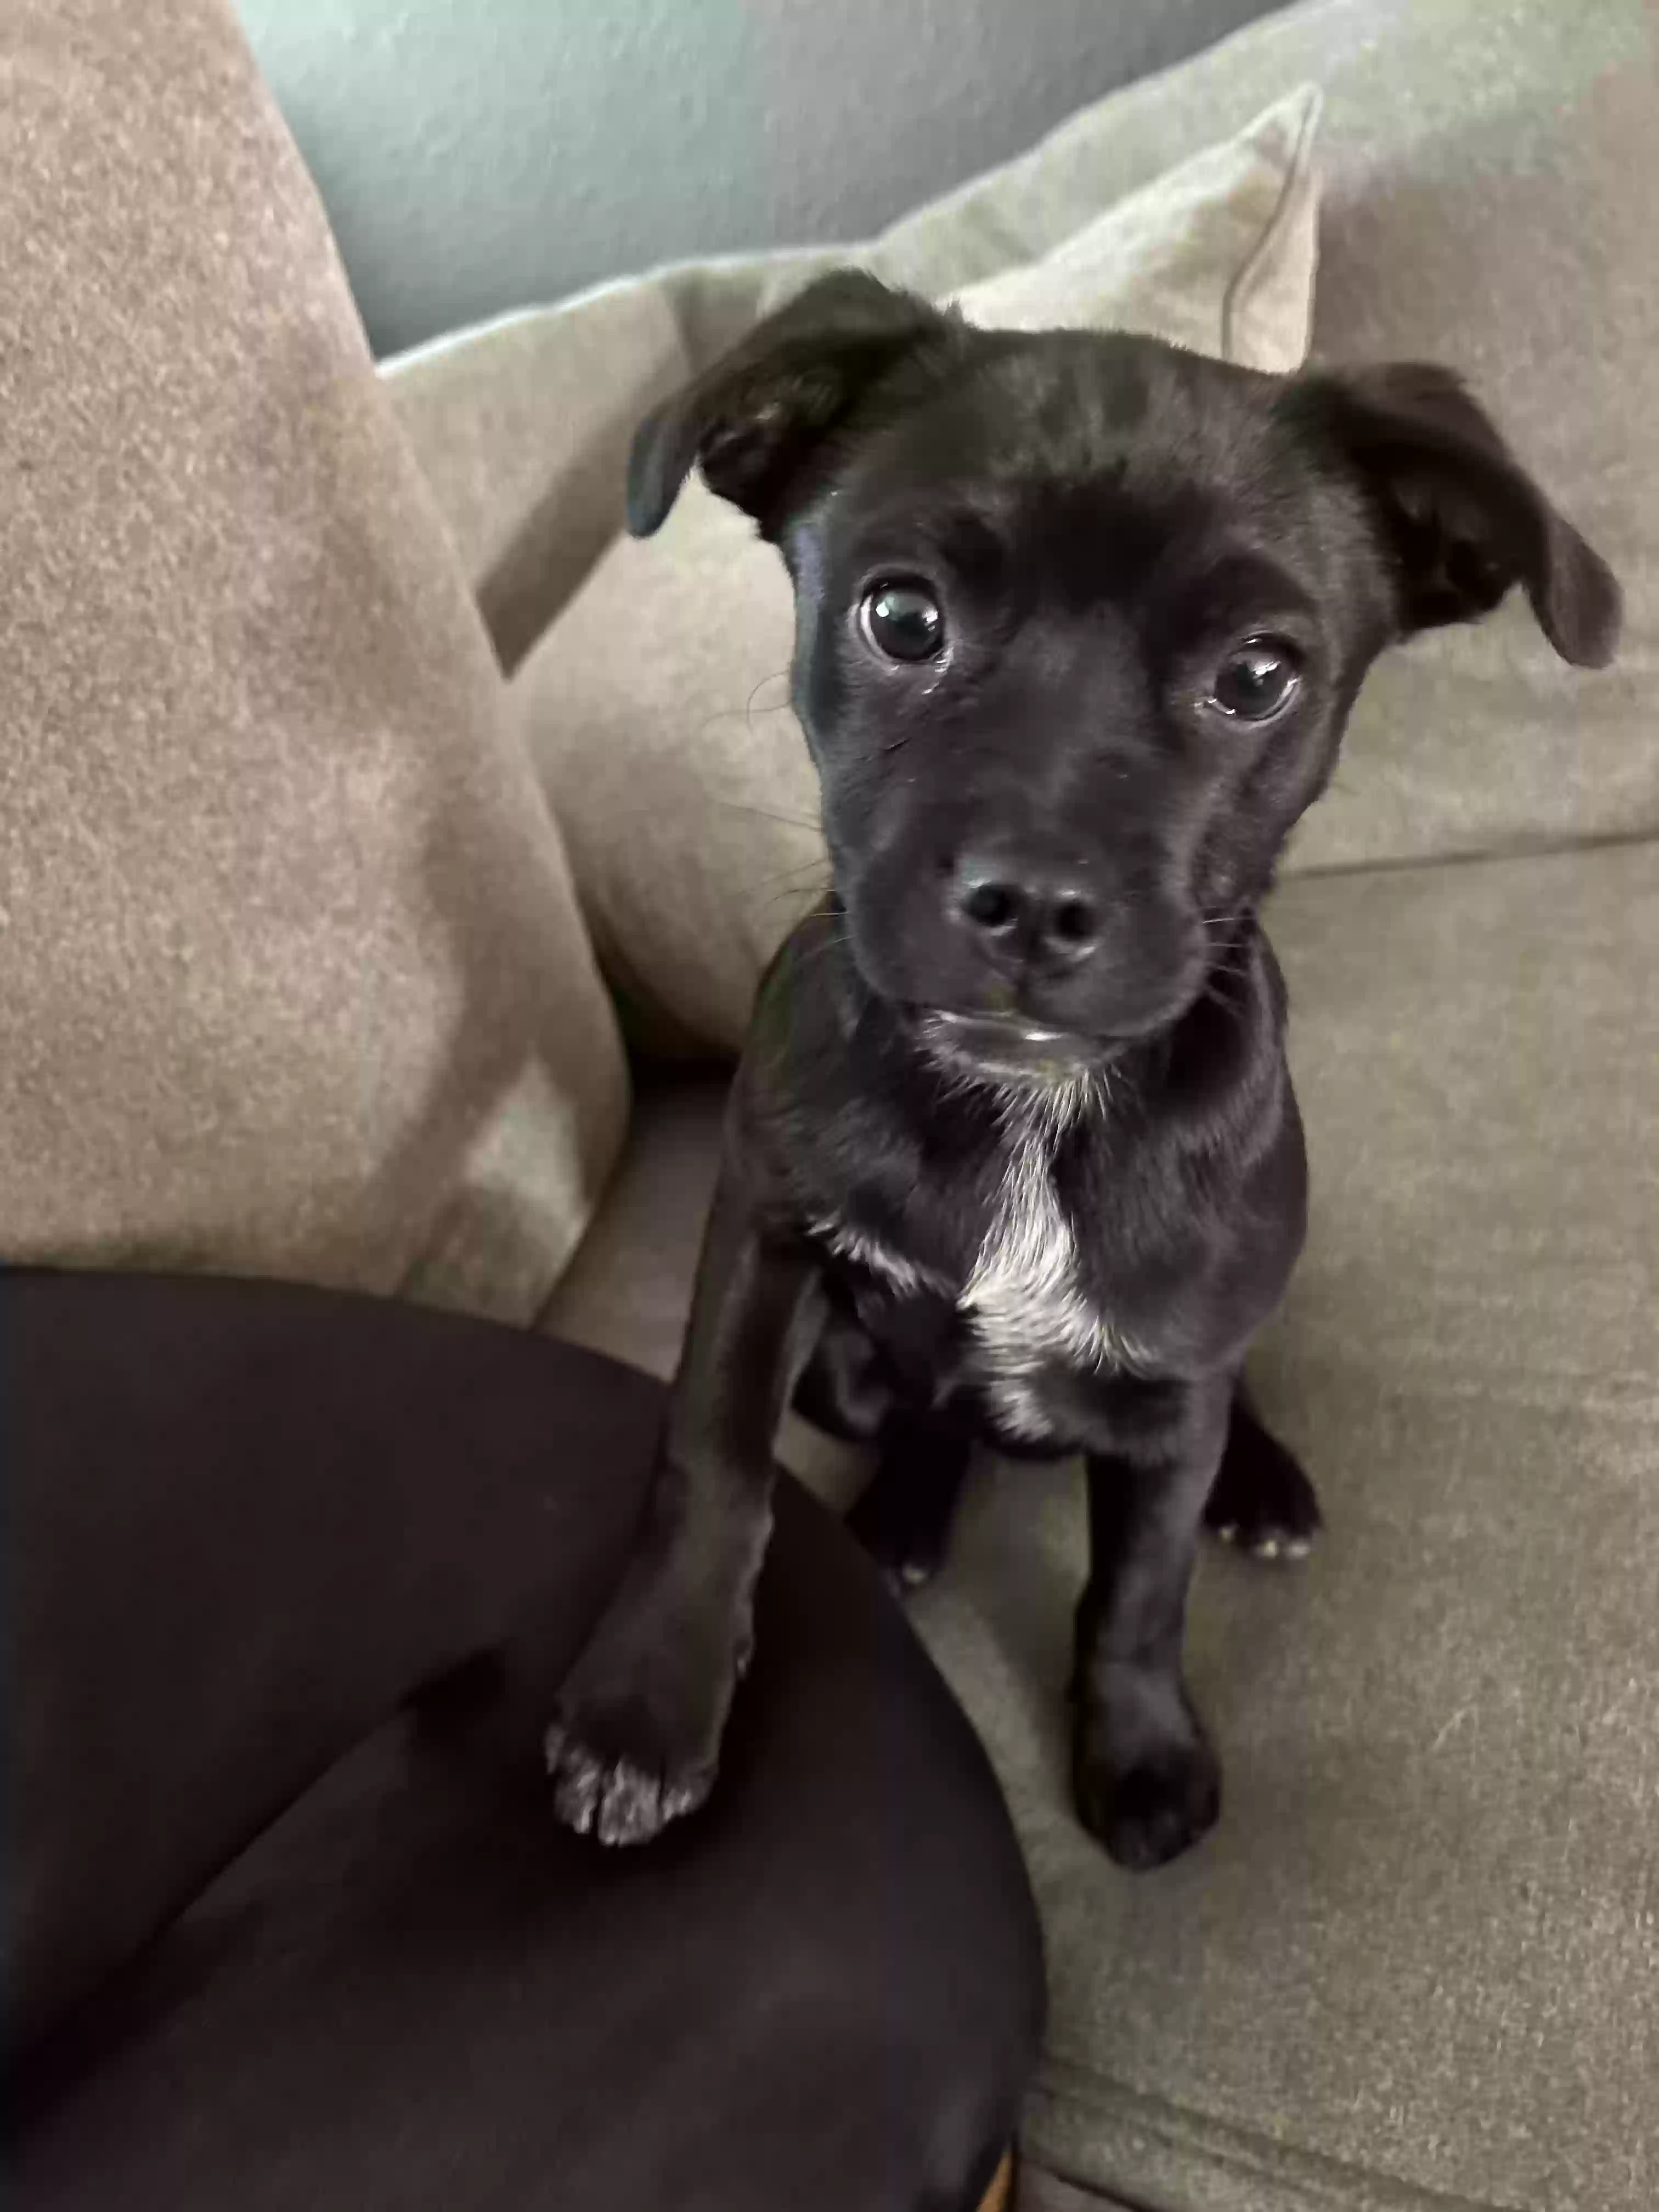 adoptable Dog in Glendale,AZ named Fern